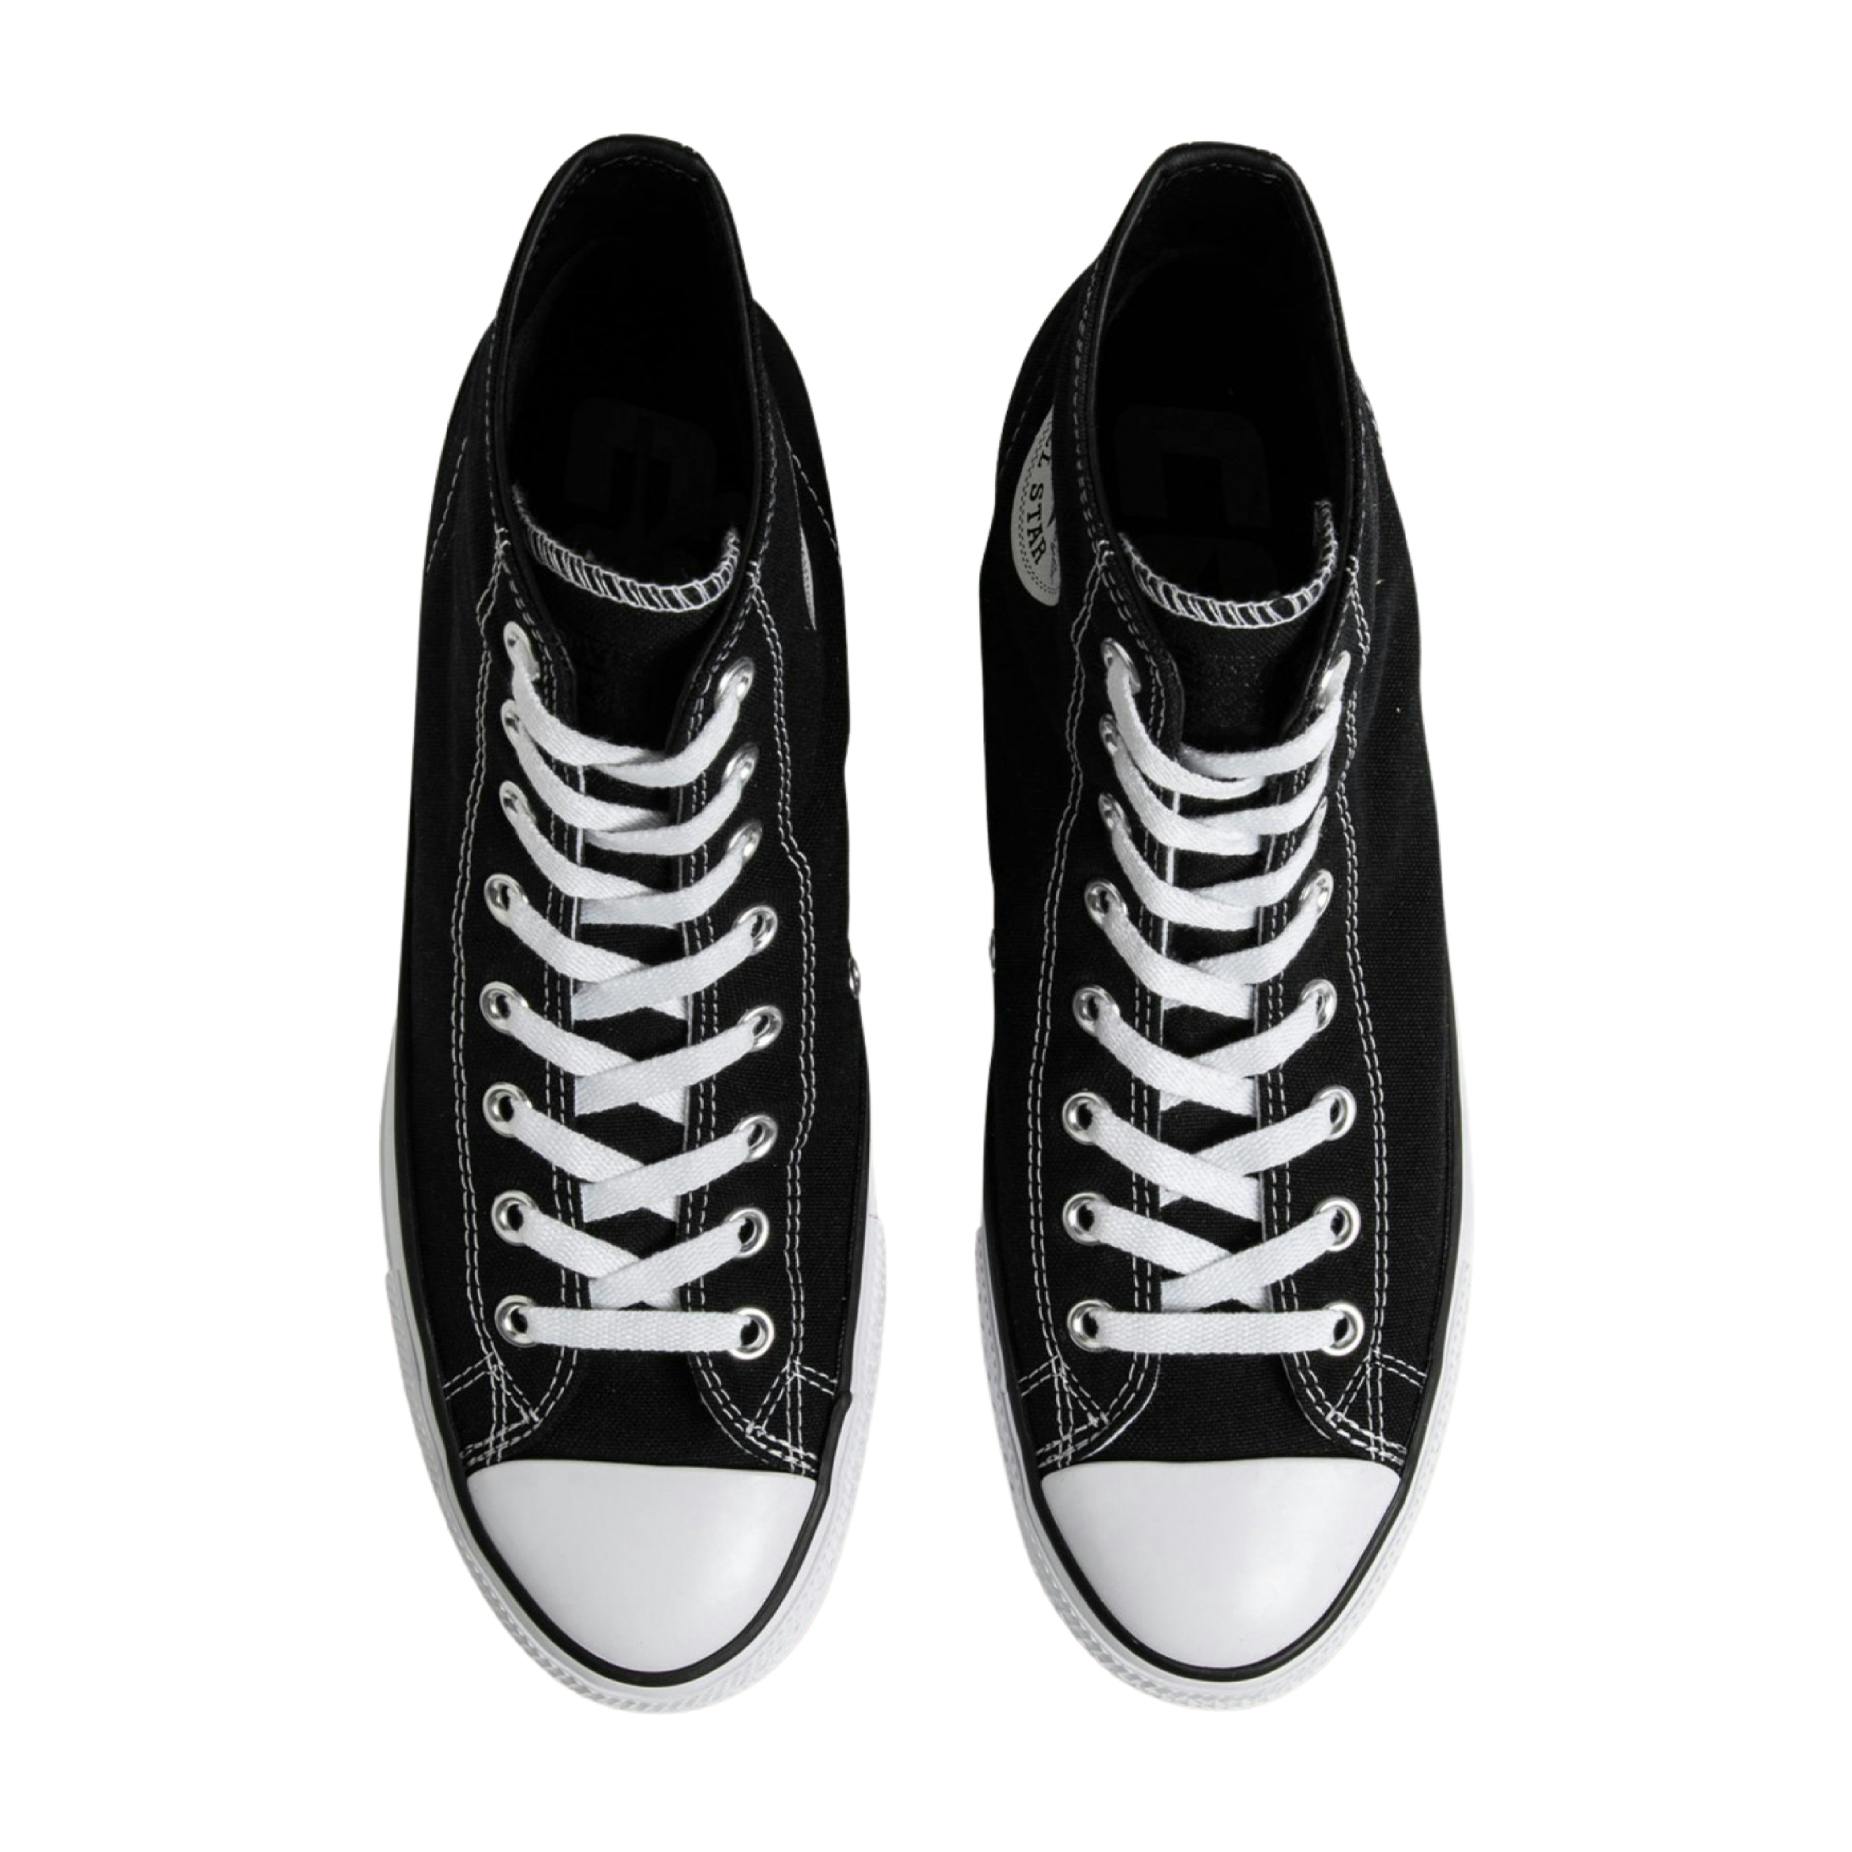 Converse CTAS Pro Hi Skate Shoe - Black/Black/White | BOARDWORLD Store